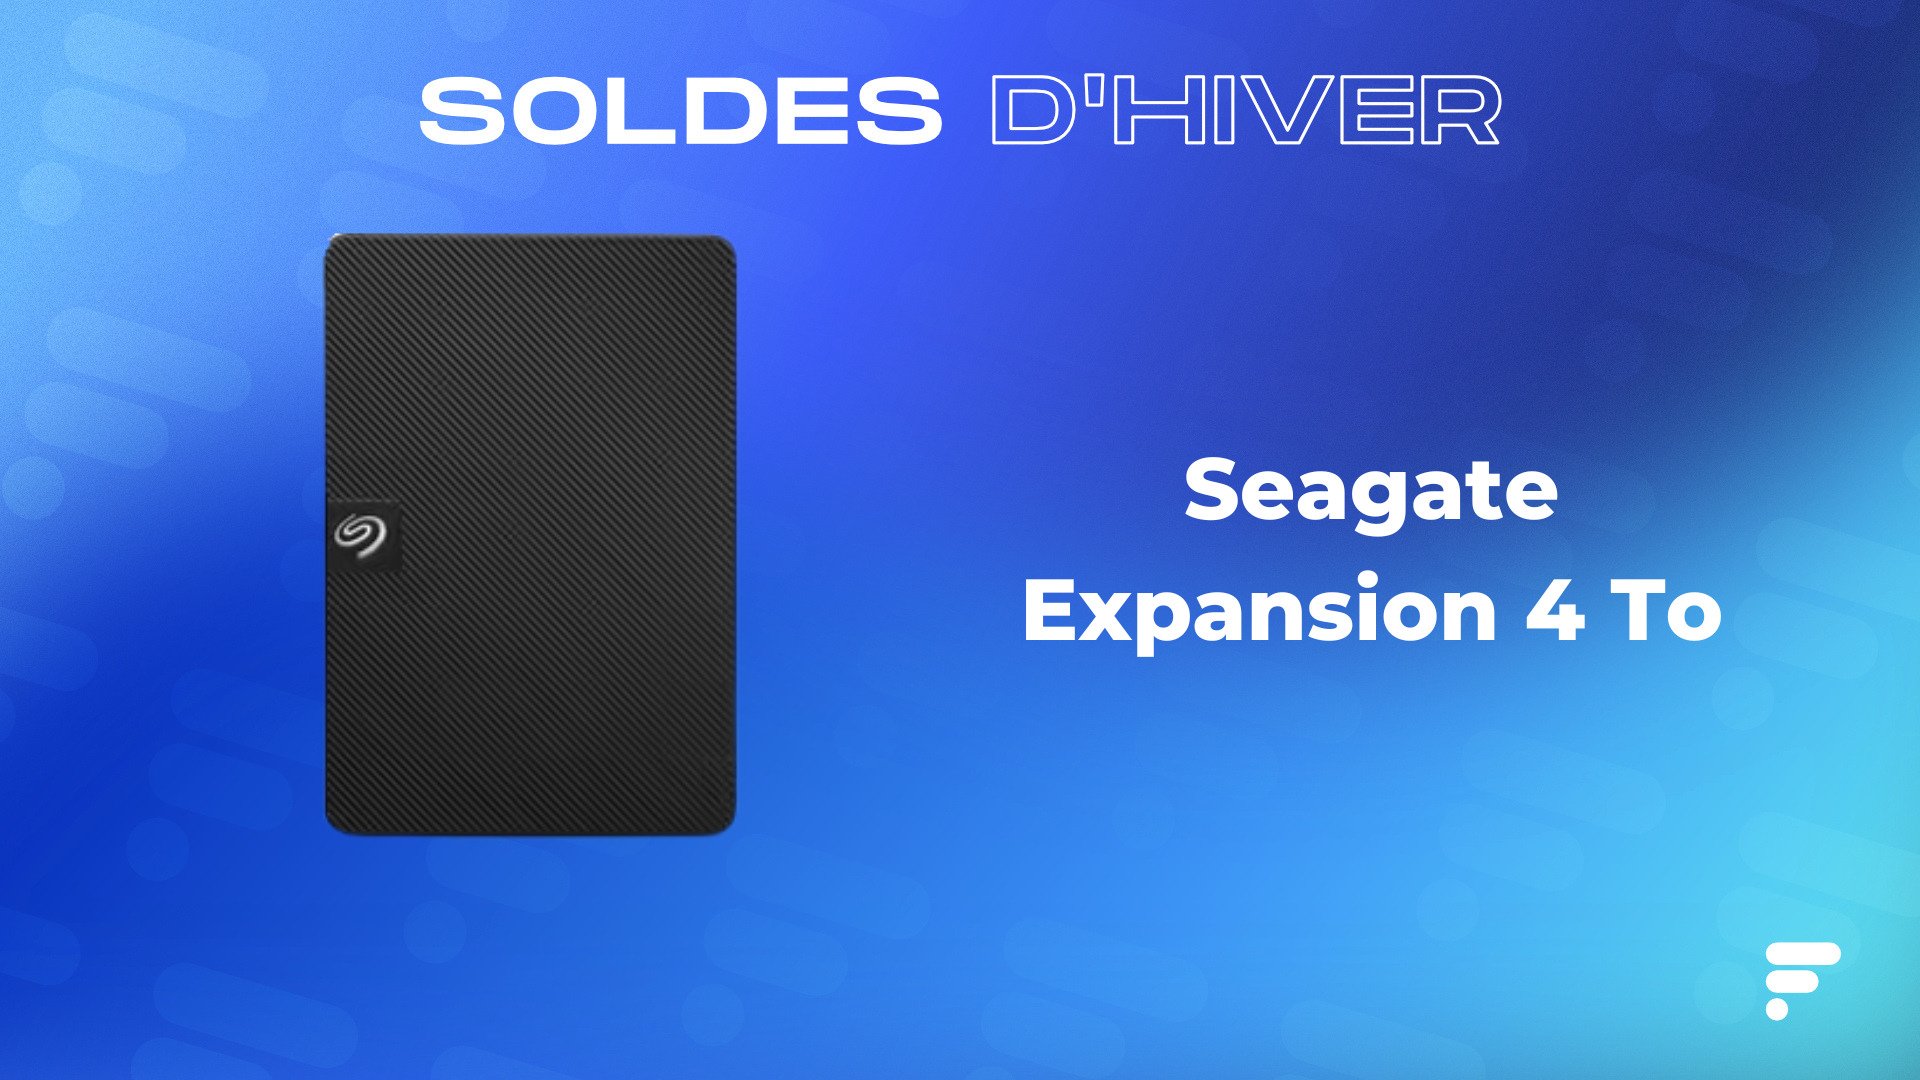 Ce disque dur externe Seagate de 4 To n'est qu'à 85 € pour les soldes  d'hiver